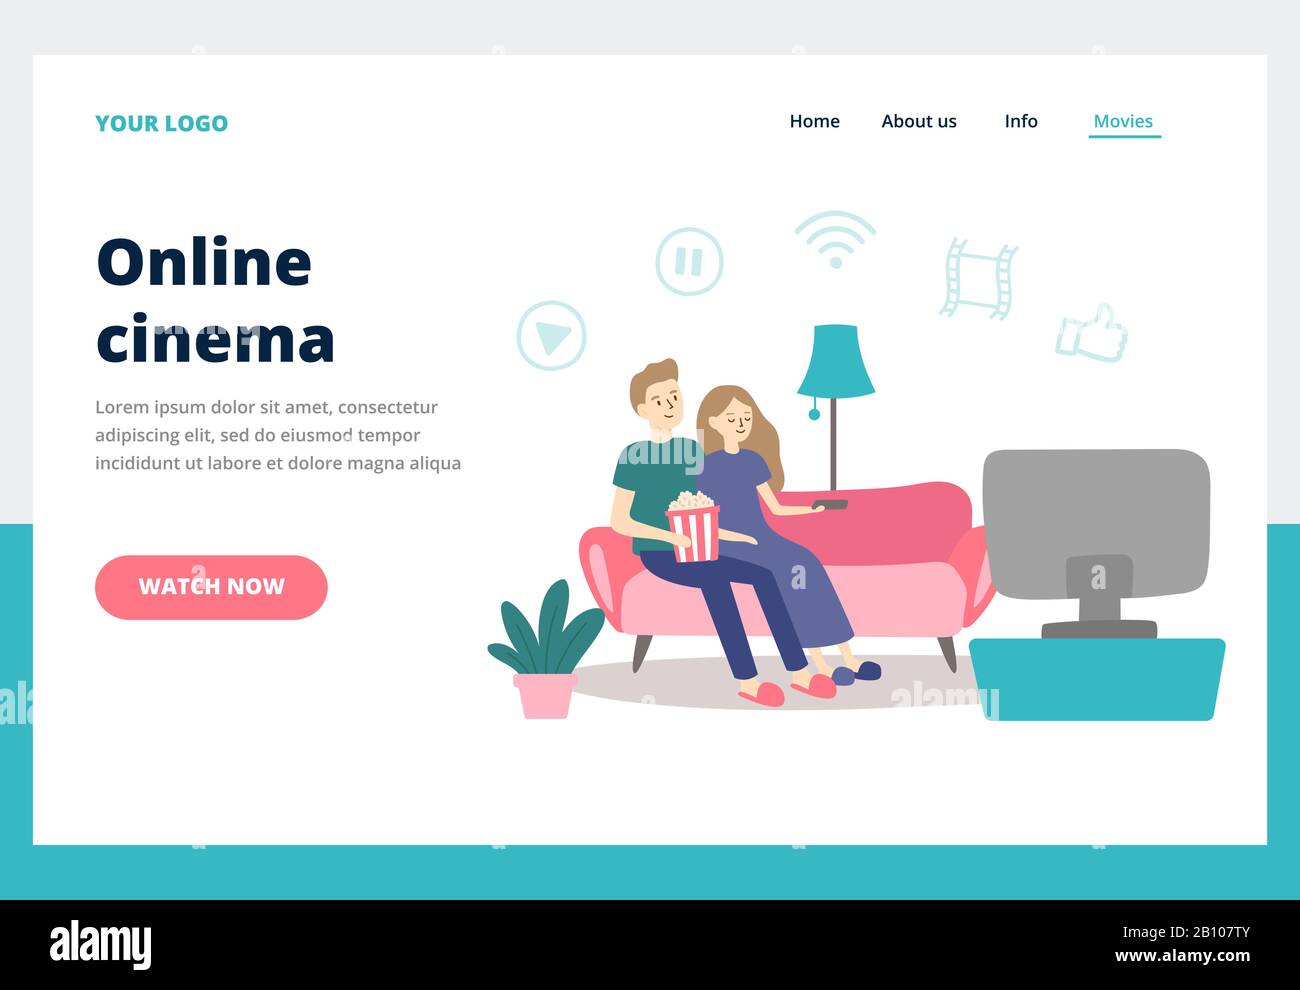 Paare, die Filme ansehen. Junger Mann und Frau sehen sich zu Hause Filme an. Online-Kino-Service Business Landing Page Vector Concept Stock Vektor